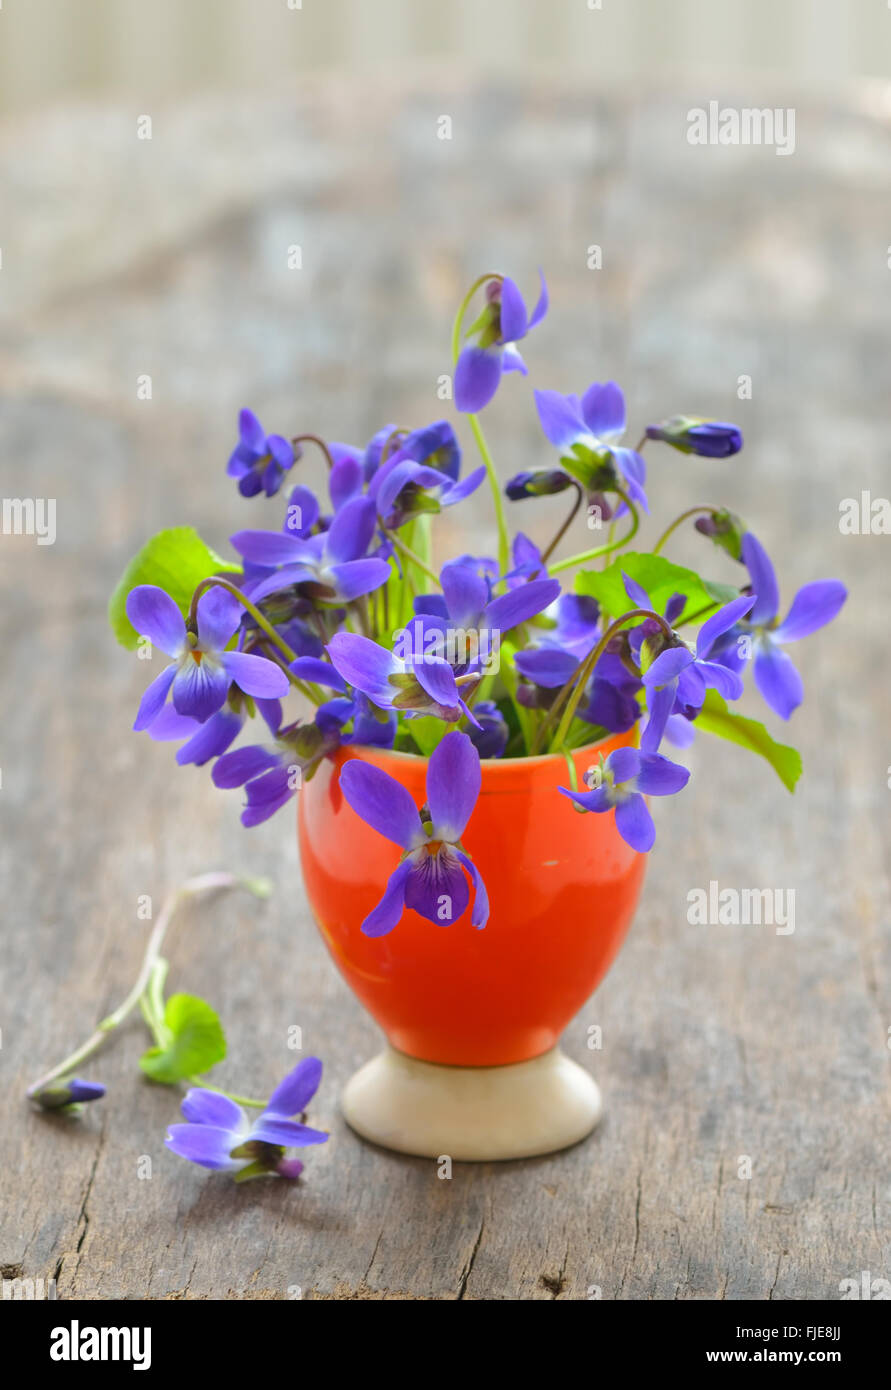 Fleurs de violette (Viola odorata) sur fond de bois Banque D'Images